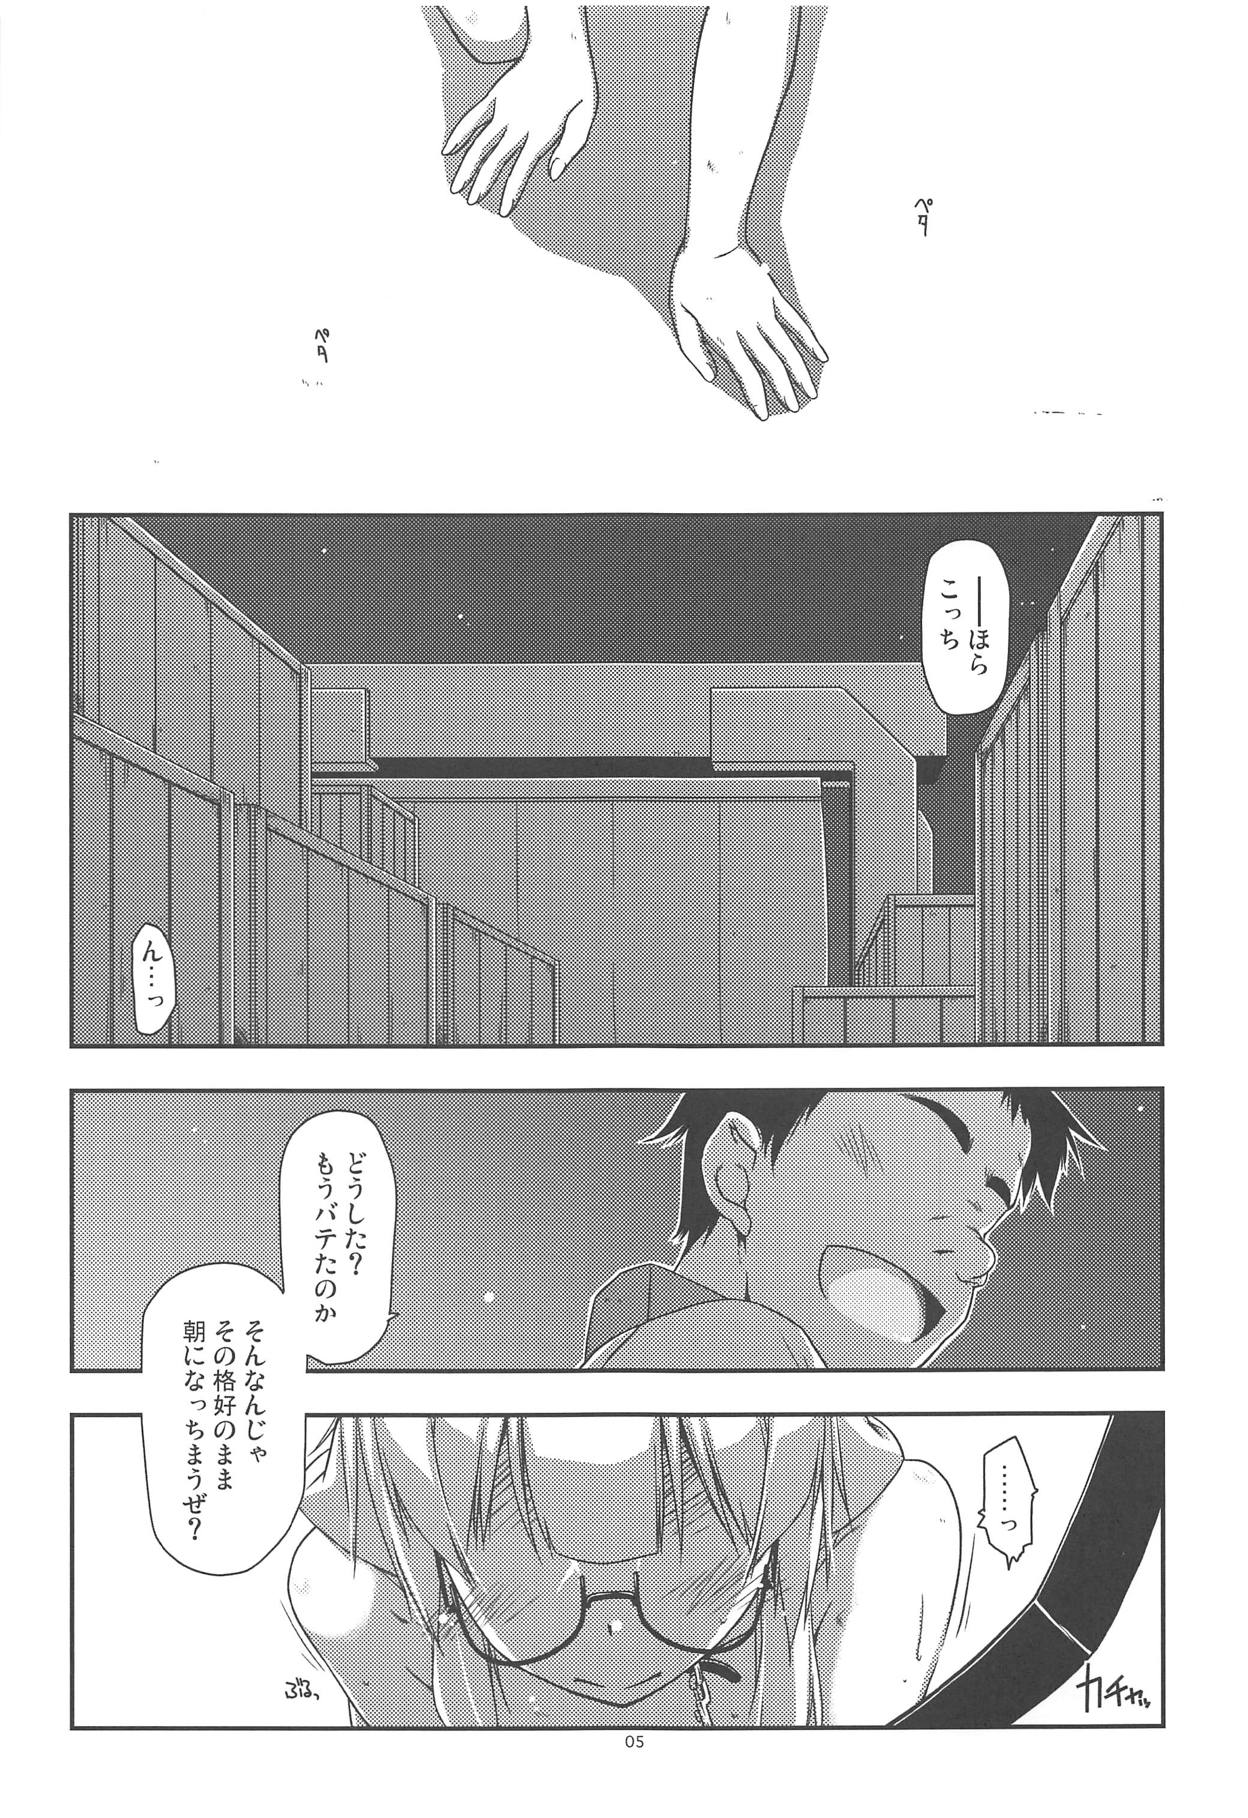 (SC62) [Angyadow (Shikei)] Hinjuushi Ijiri 4 (Kyoukai Senjou no Horizon) page 4 full